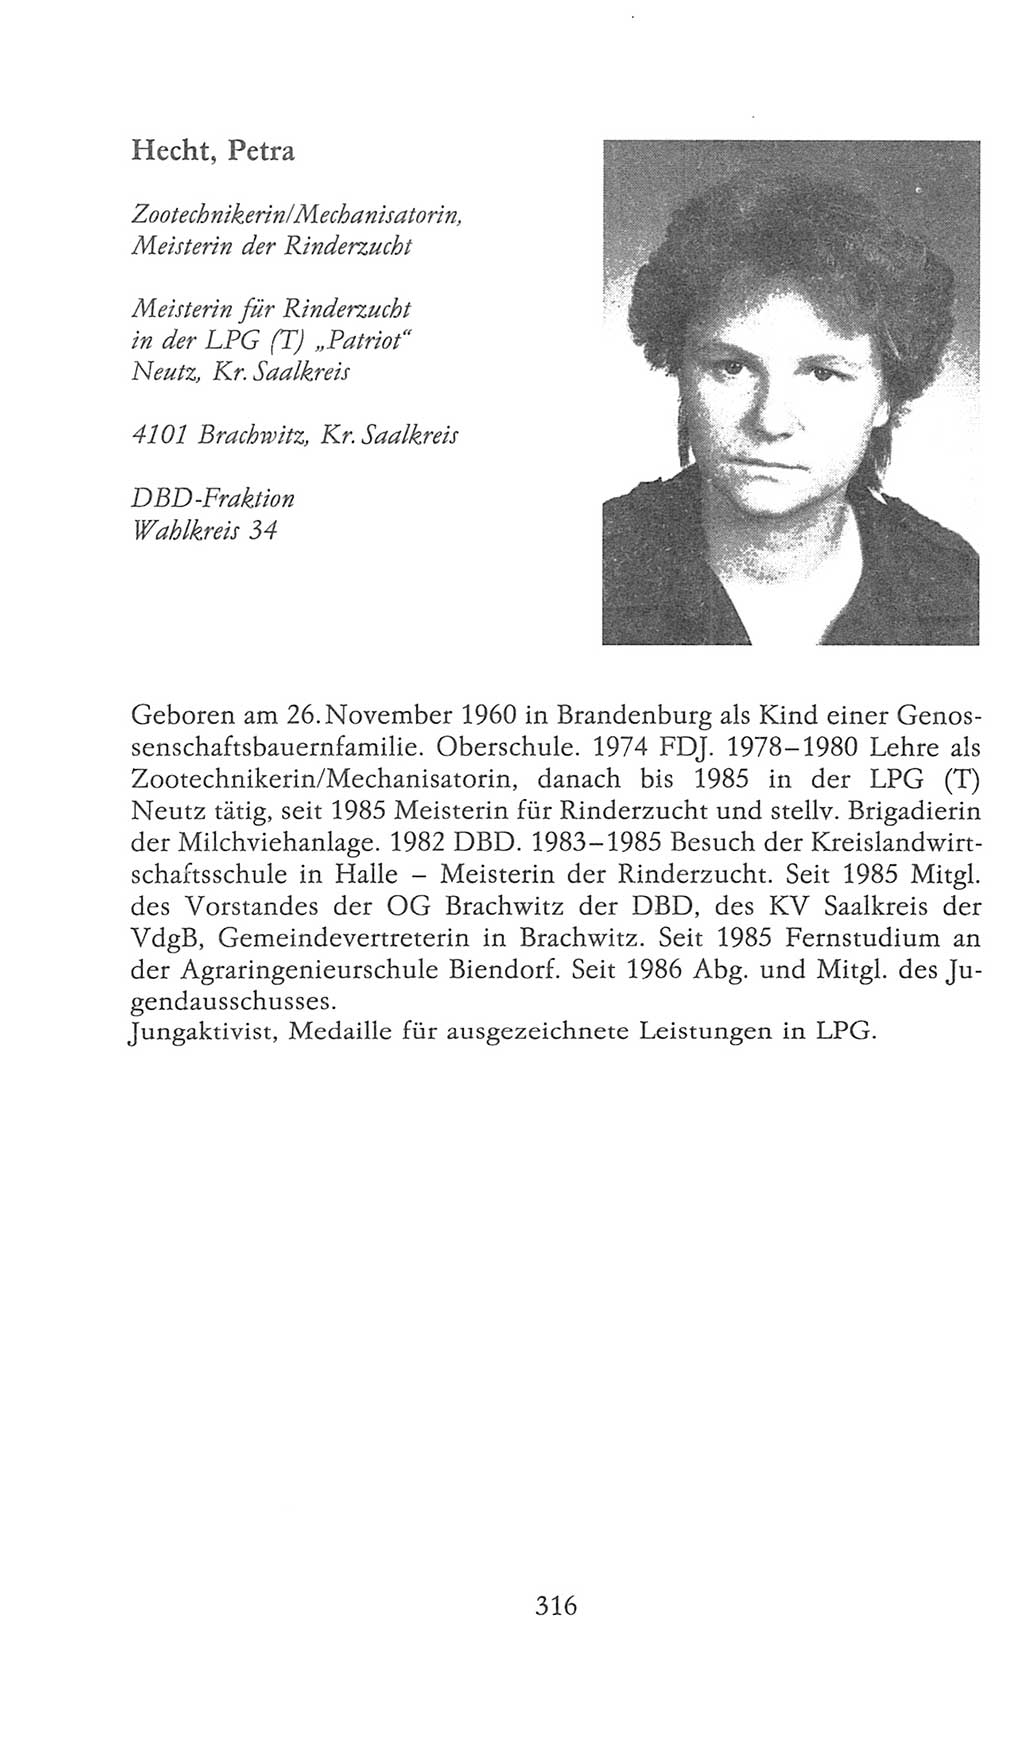 Volkskammer (VK) der Deutschen Demokratischen Republik (DDR), 9. Wahlperiode 1986-1990, Seite 316 (VK. DDR 9. WP. 1986-1990, S. 316)